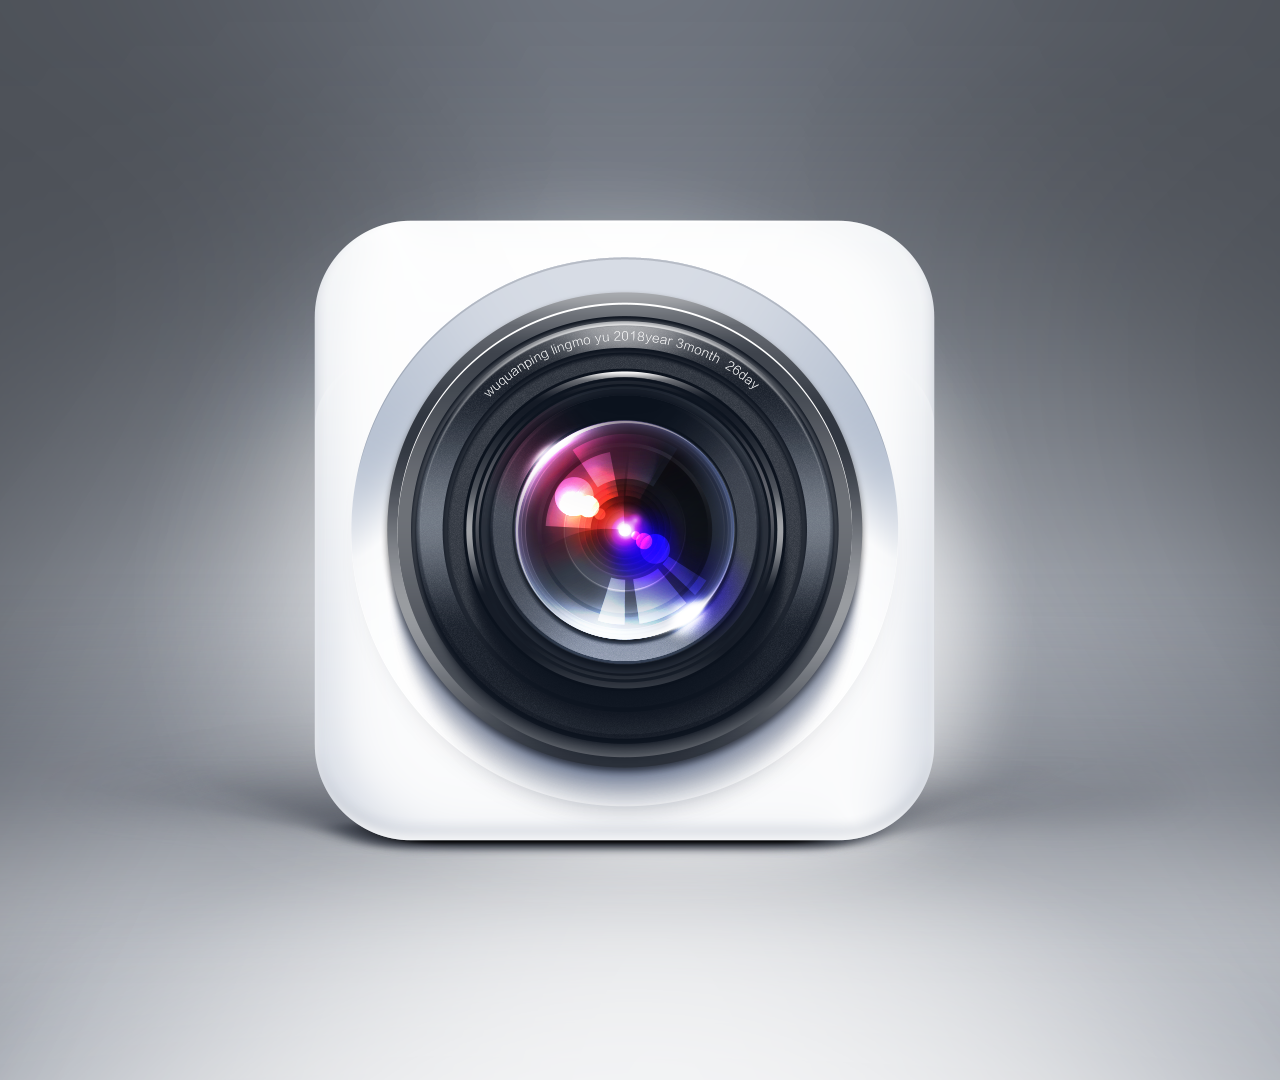 icon/app界面 照相机图标